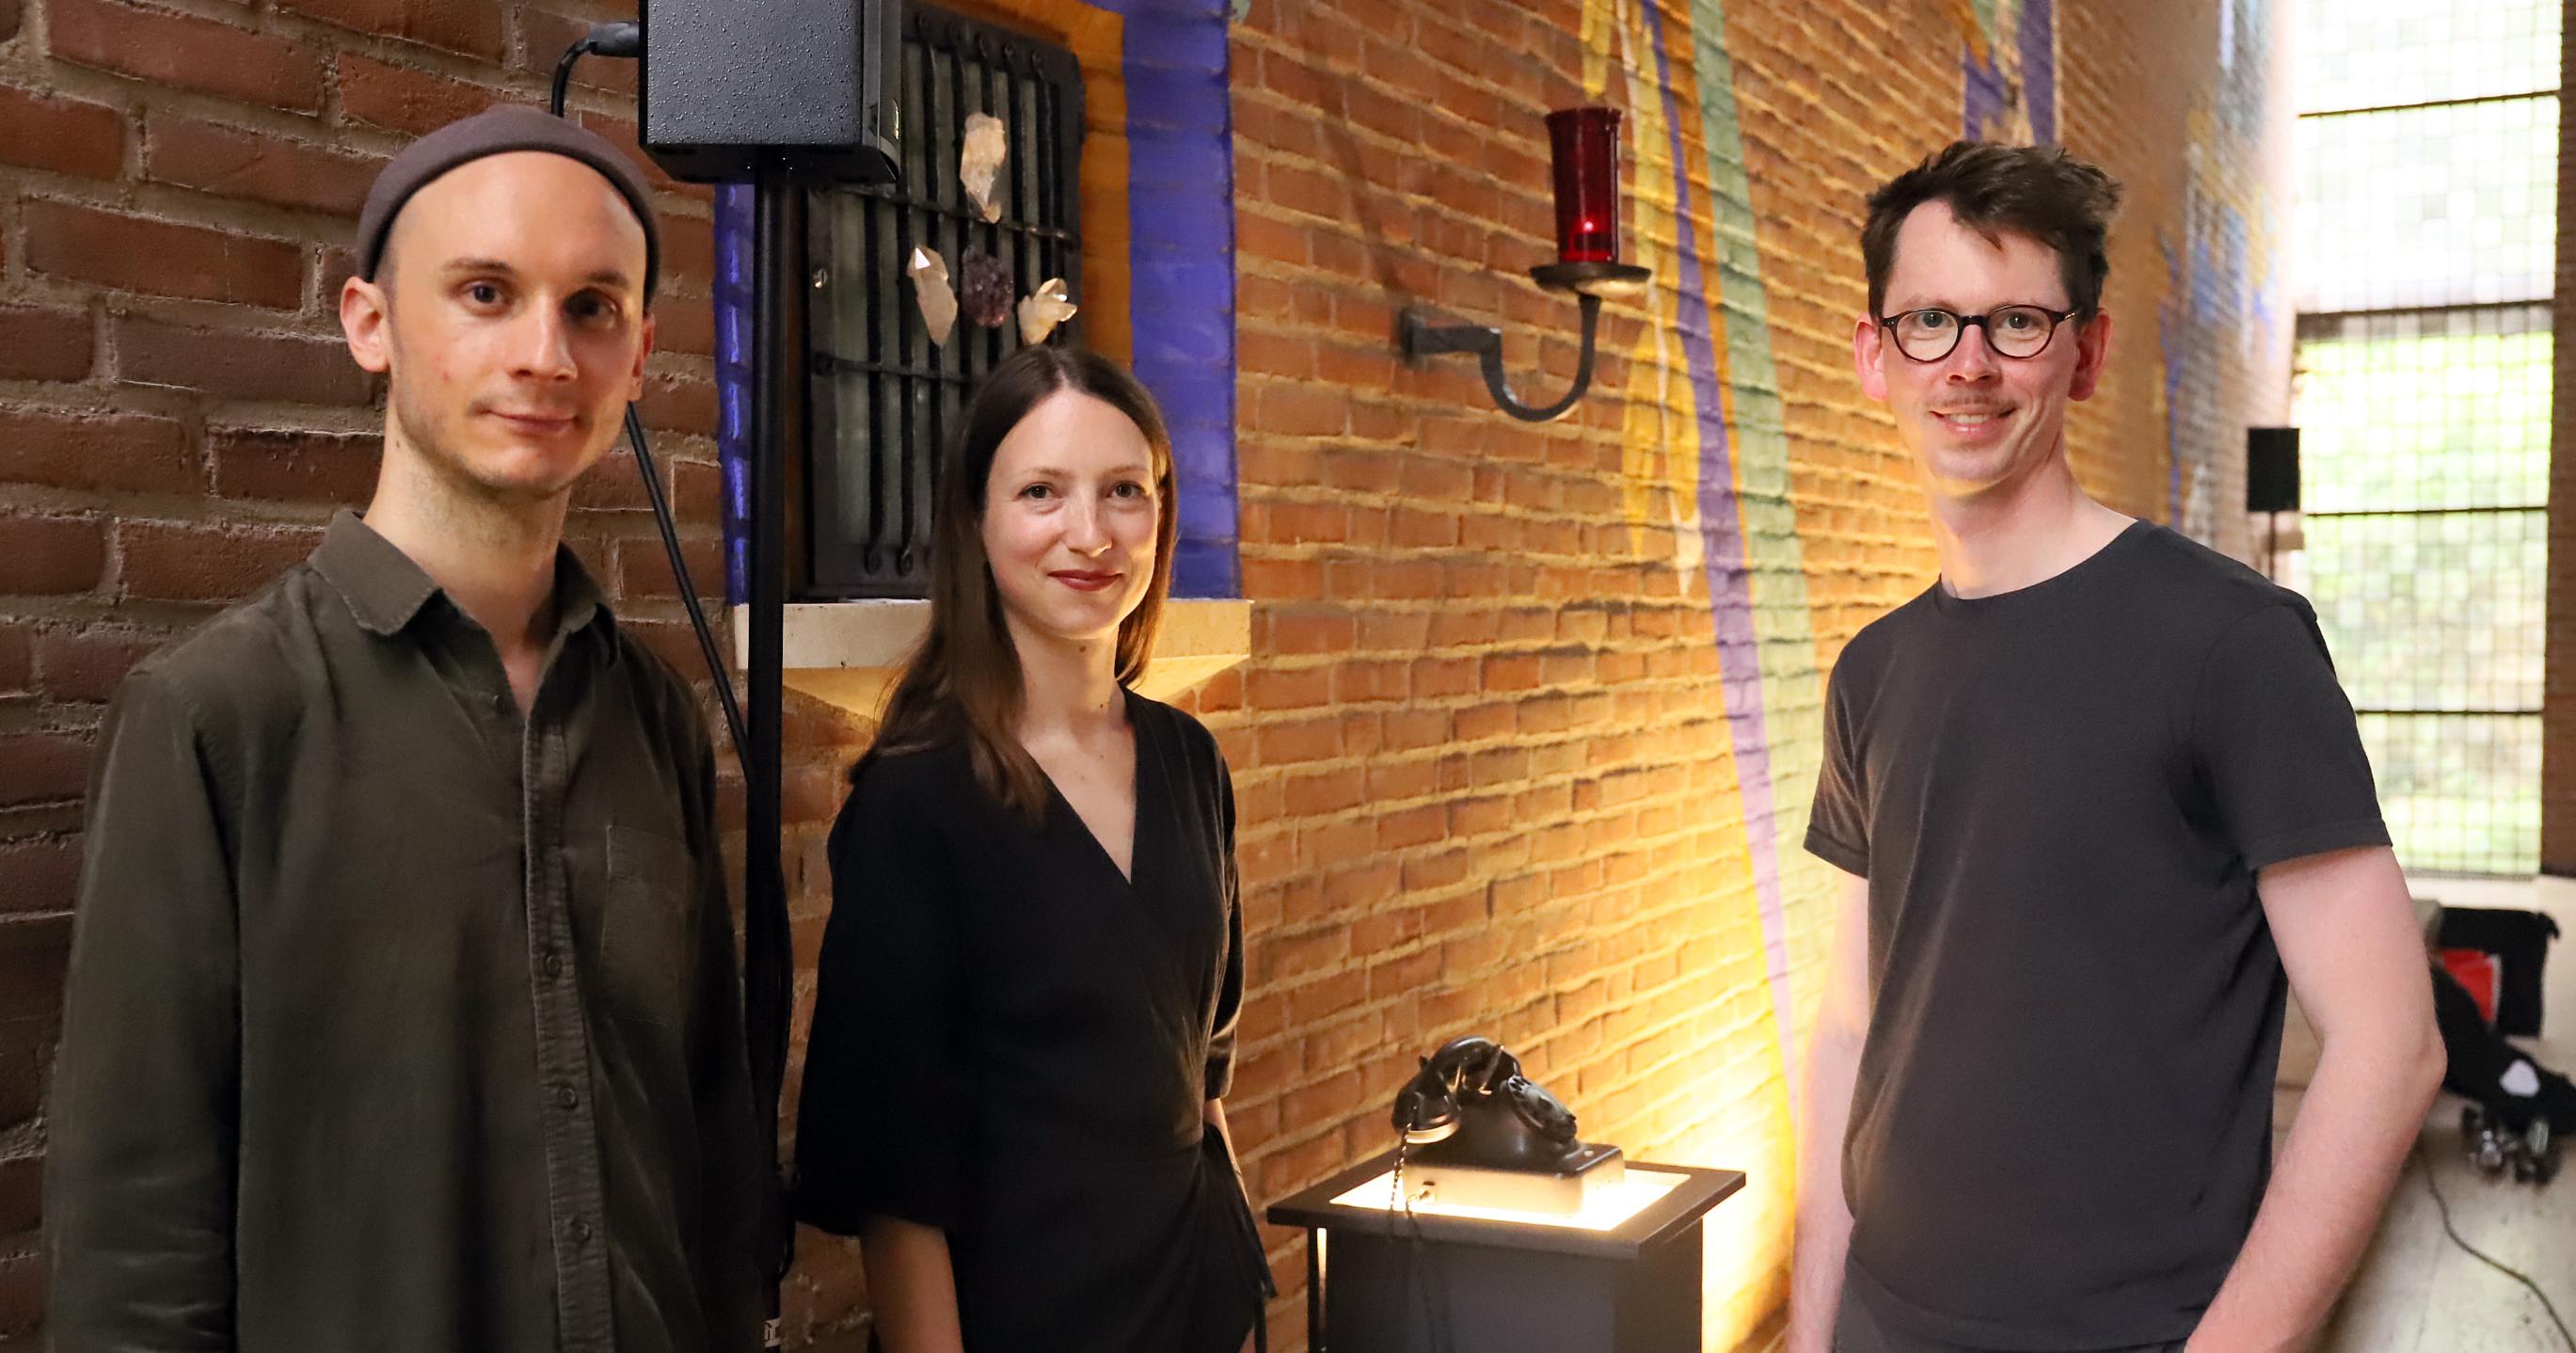 Luis Weiß, Nathalie Brum und Lukas Schäfer leben in Köln und widmen sich musikalischer und visueller Kunst.